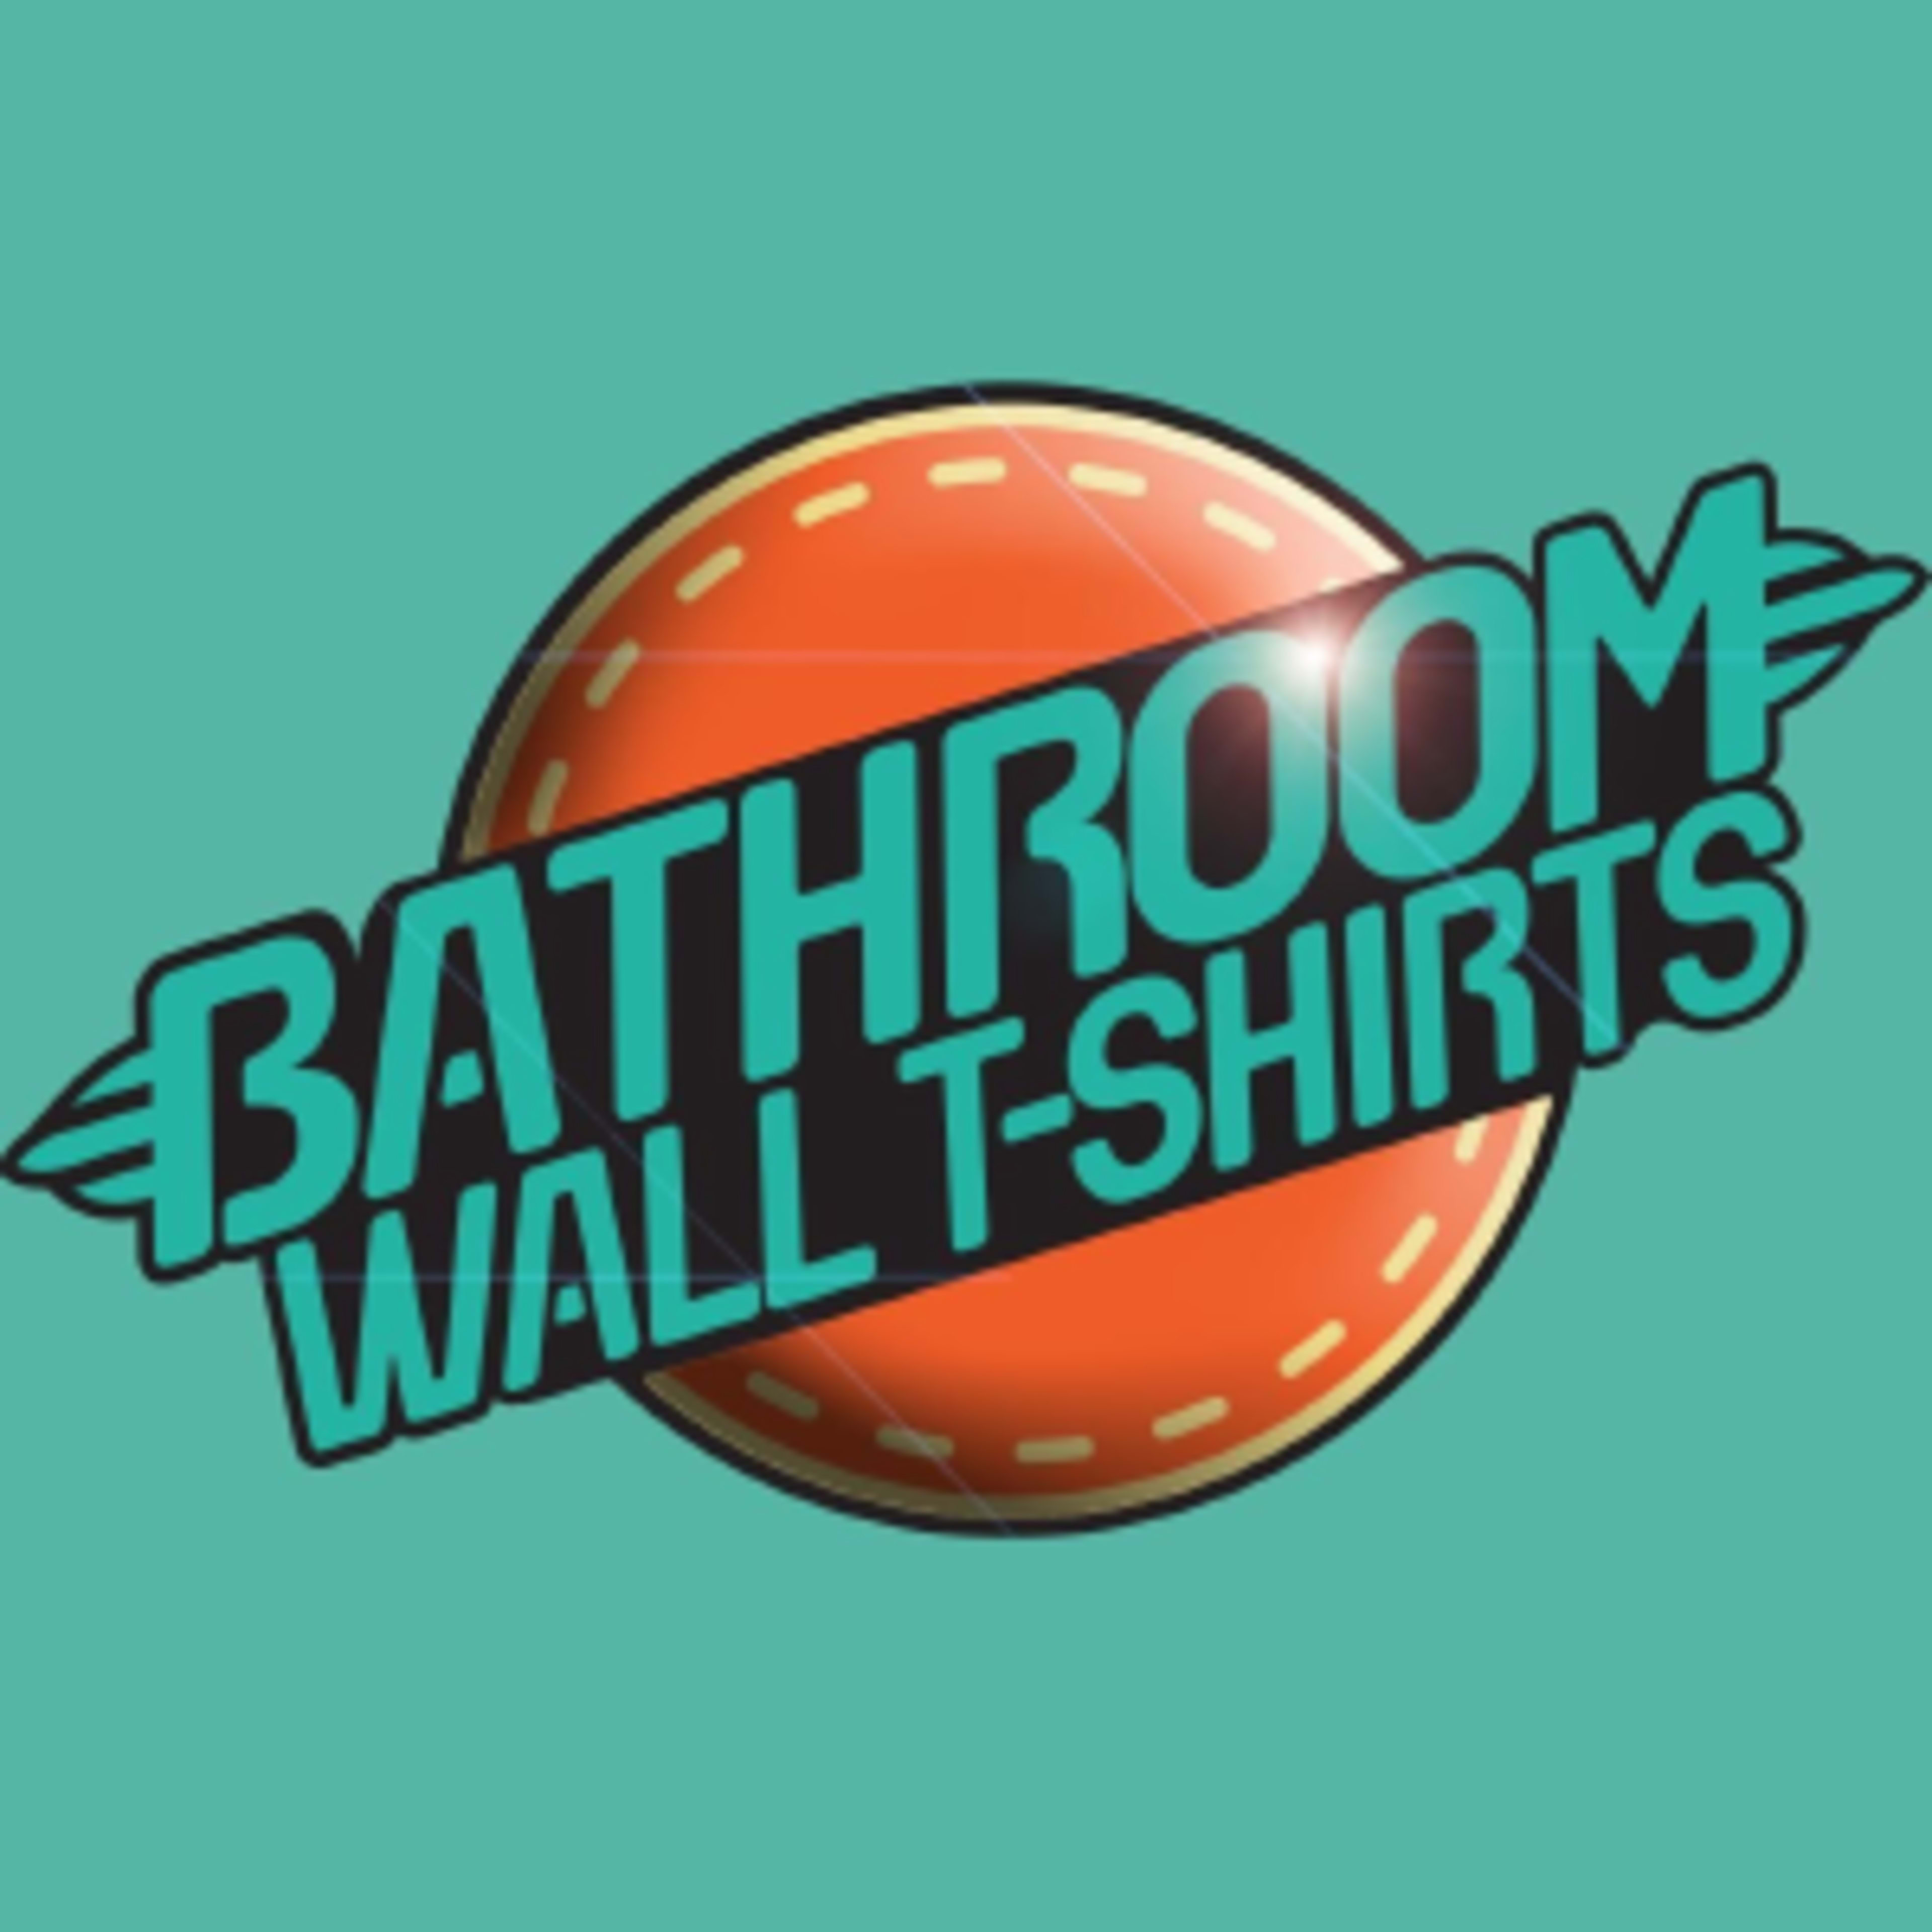 BathRoom Wall TshirtsCode